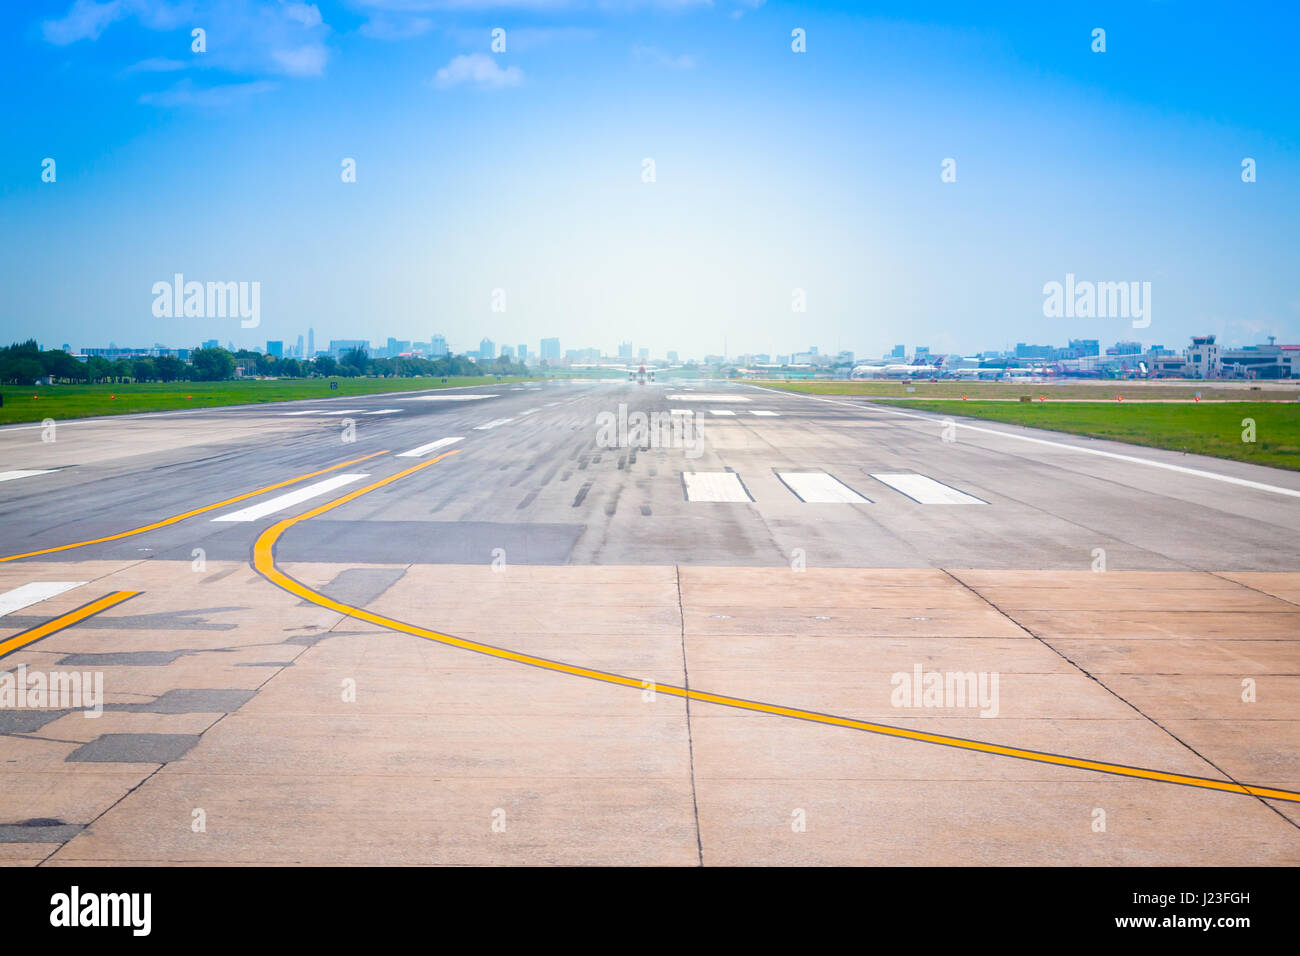 Start-und Landebahn von Bangkok, Thailand Flughafen, Flugplatz im Flughafen-terminal mit Markierung am blauen Himmel mit Sonnenlicht Hintergrund. Stockfoto